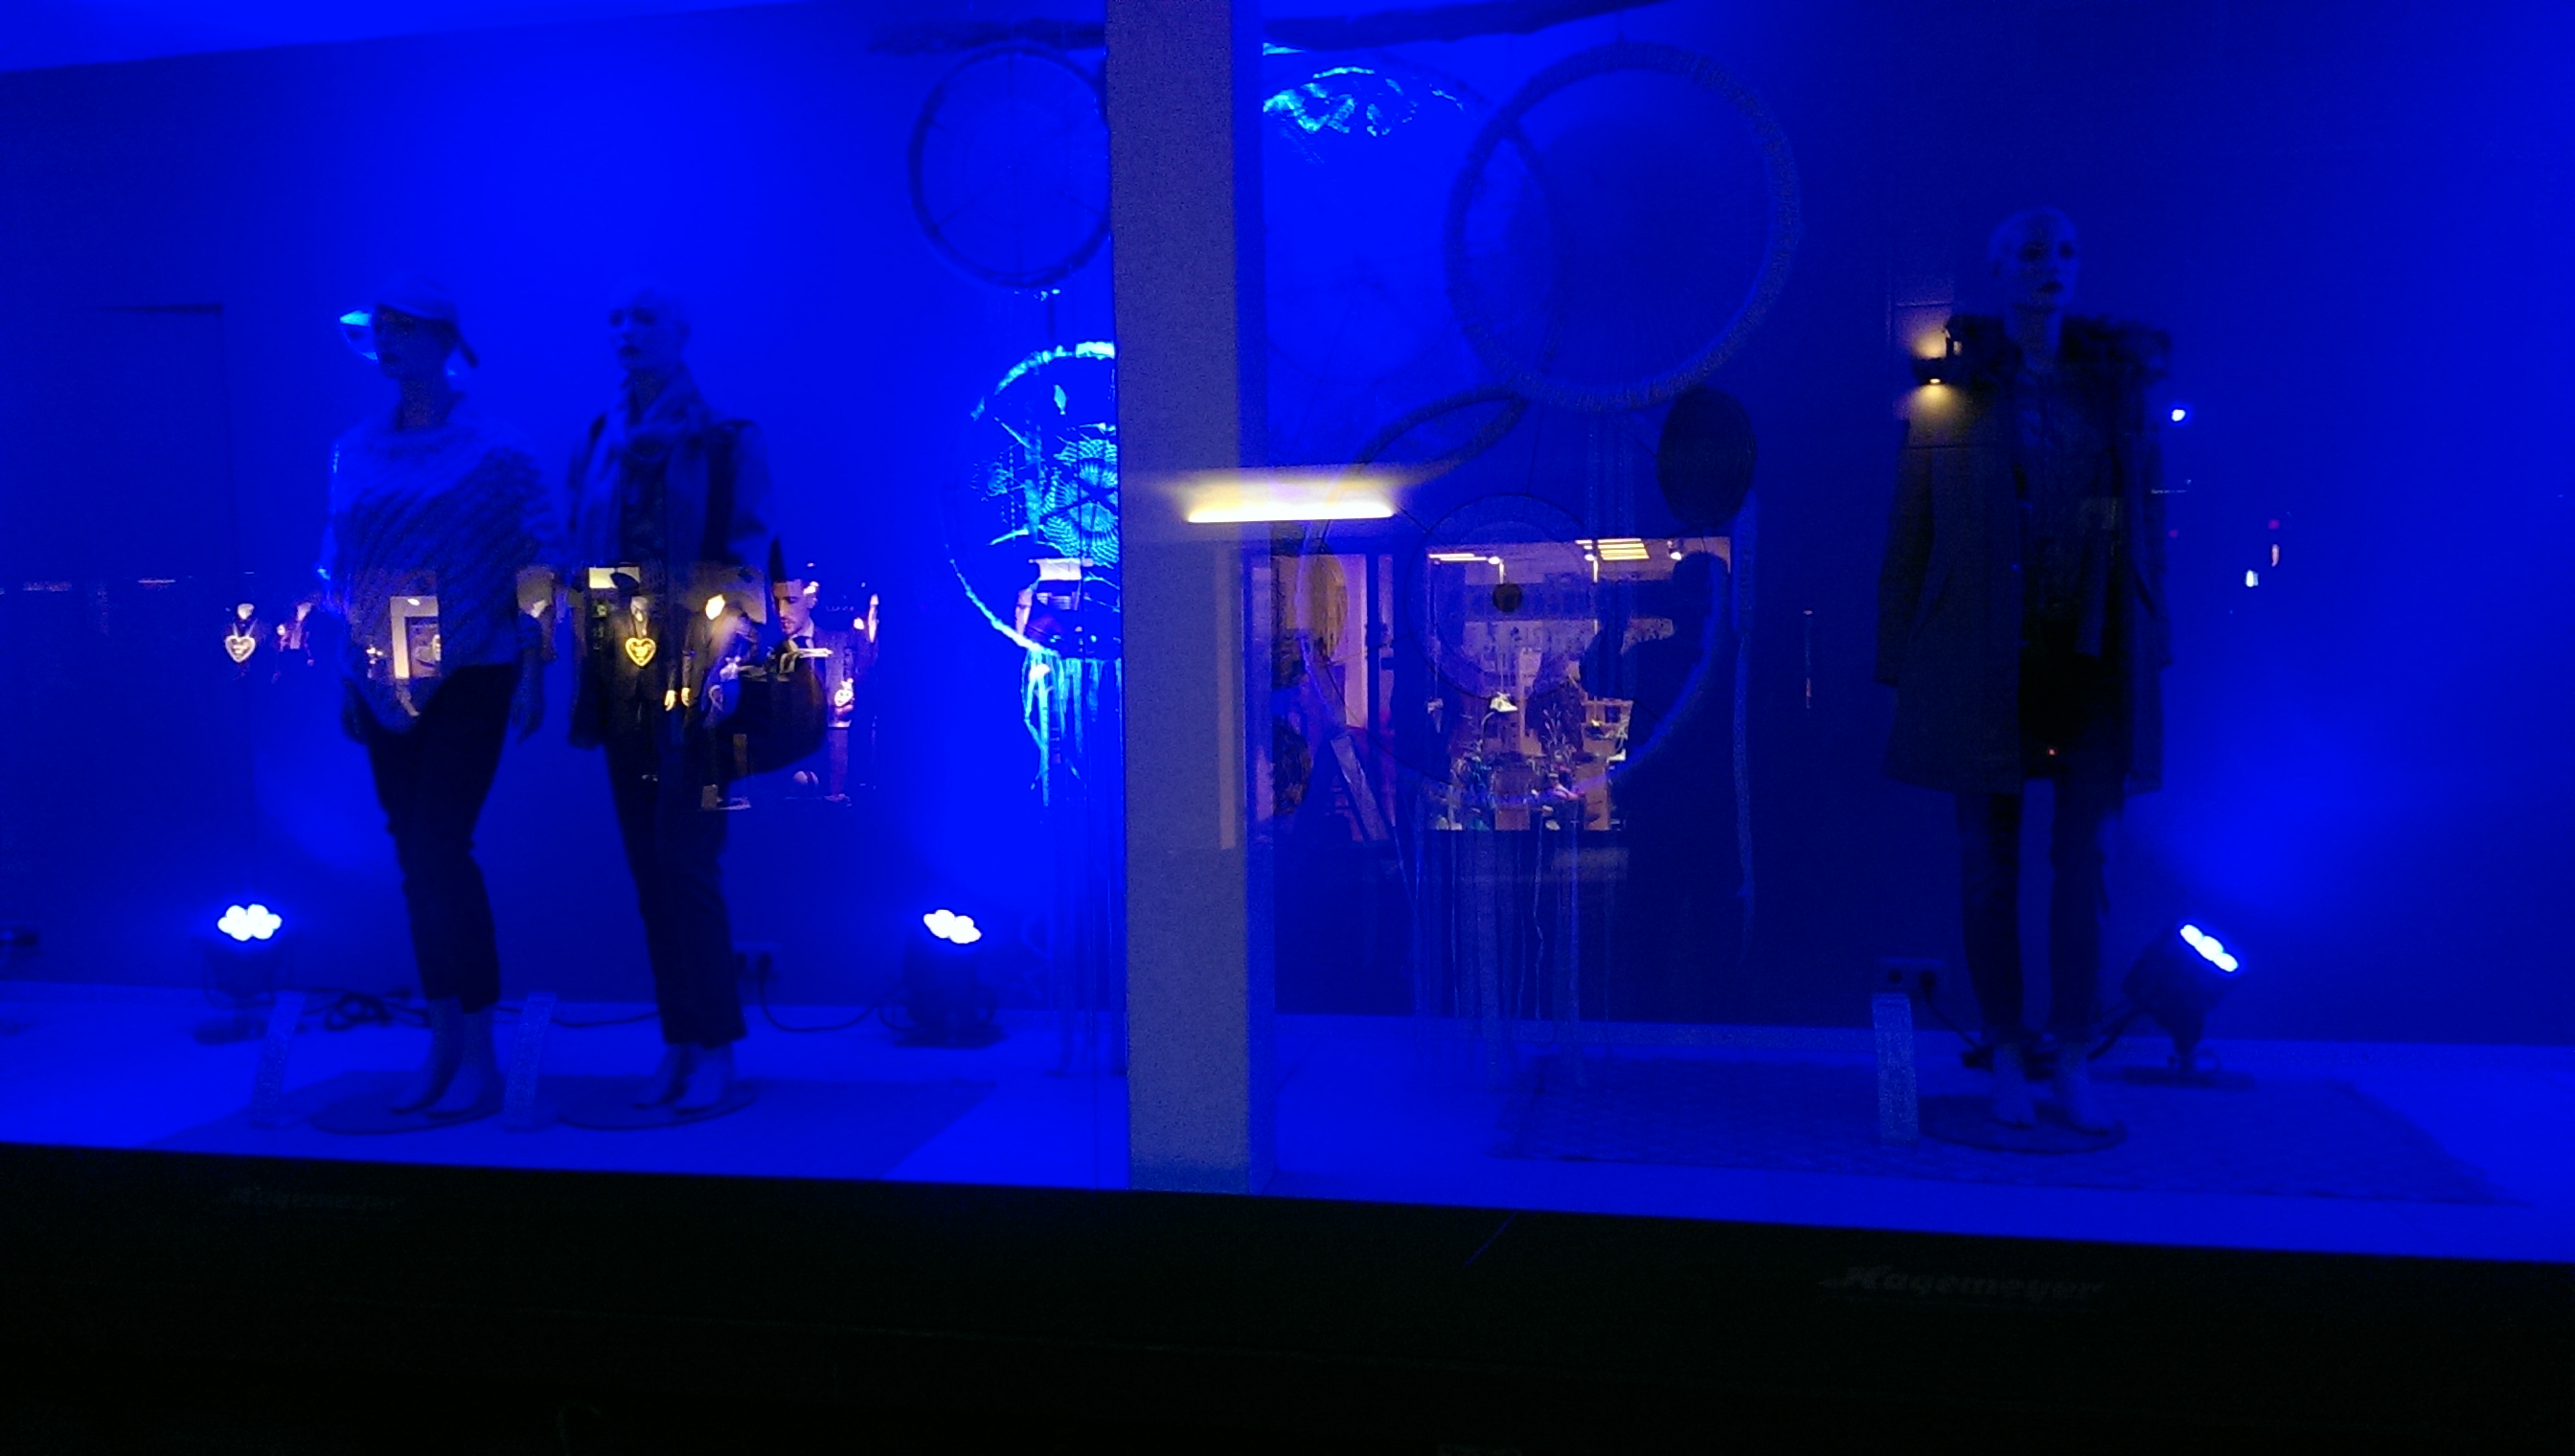 das Modehaus Hagemeyer hatdie komplette Fensterfront blau beleuchtet